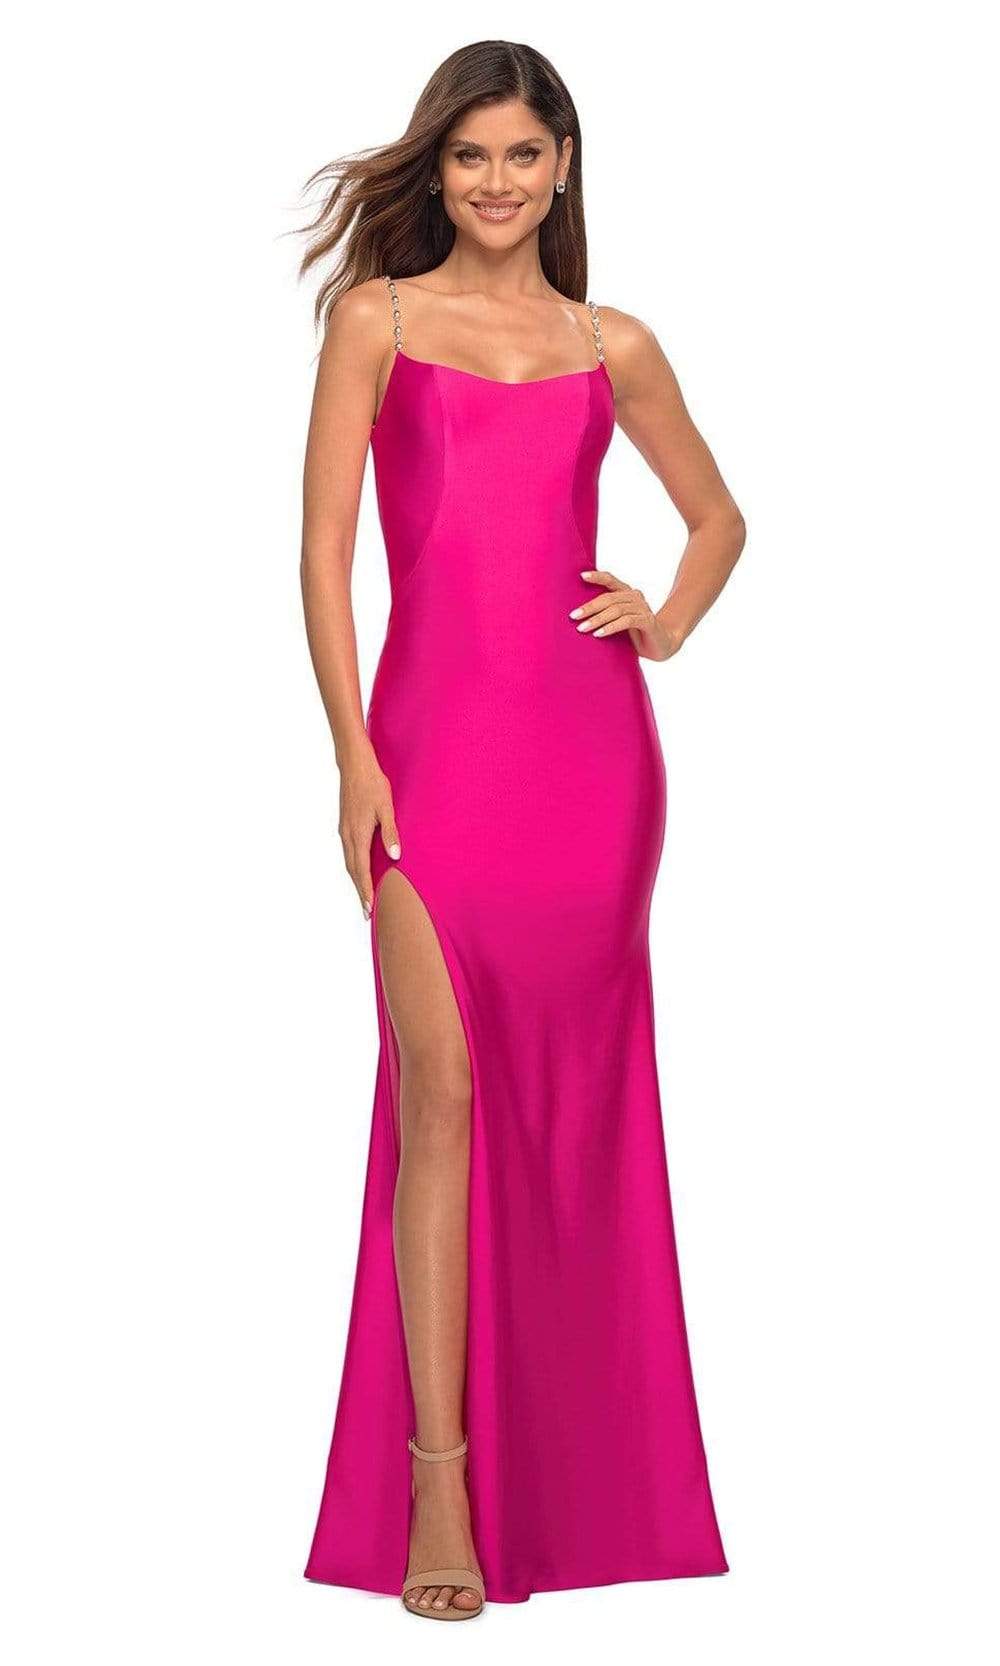 La Femme - 30665 Scoop Neck and Back Slit Dress Special Occasion Dress 00 / Neon Pink